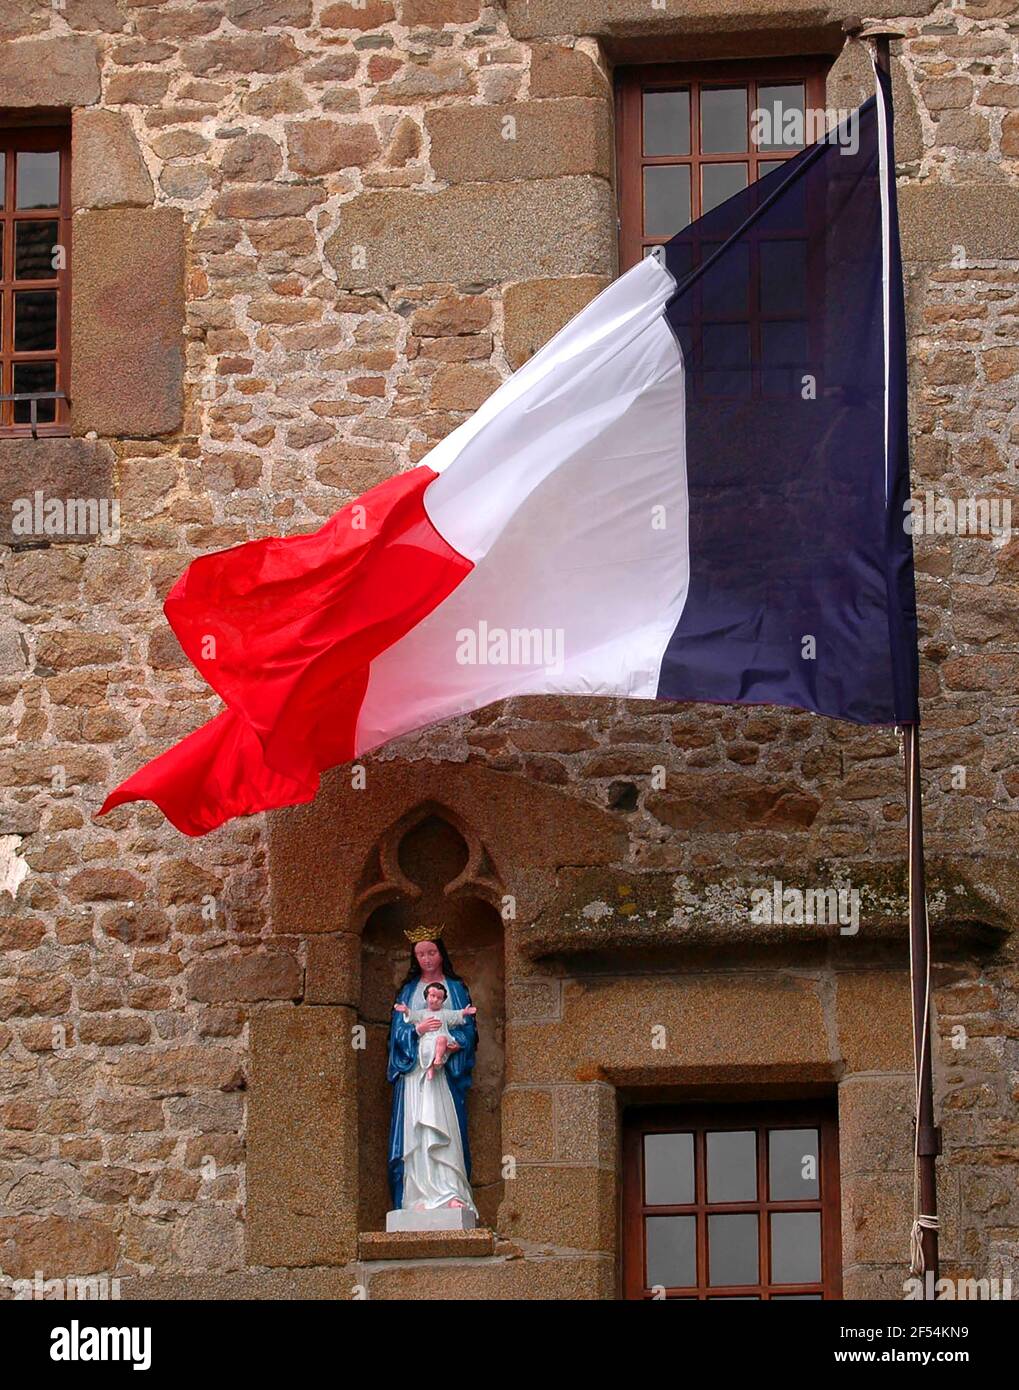 Frankreich und die katholische Kirche, nicht immer sind sie sich so nah wie hier die Marienfigur und die Trikolore. Symbolfoto *** Local Caption *** 0 Stock Photo